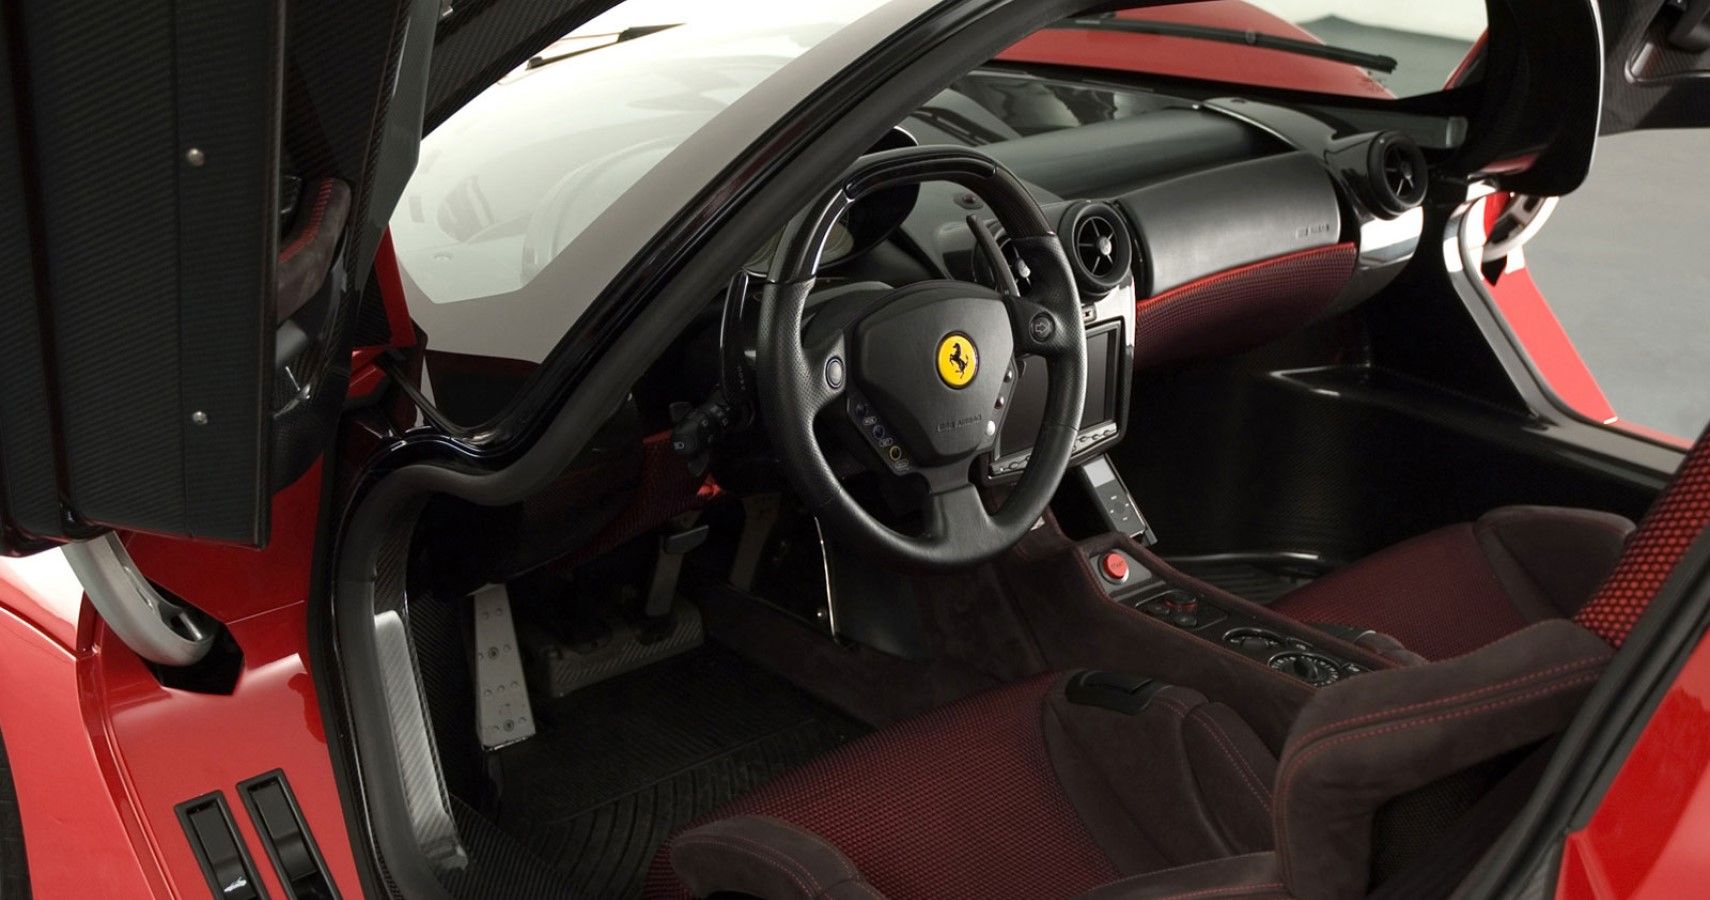 Pininfarina Ferrari P4/5 interior view